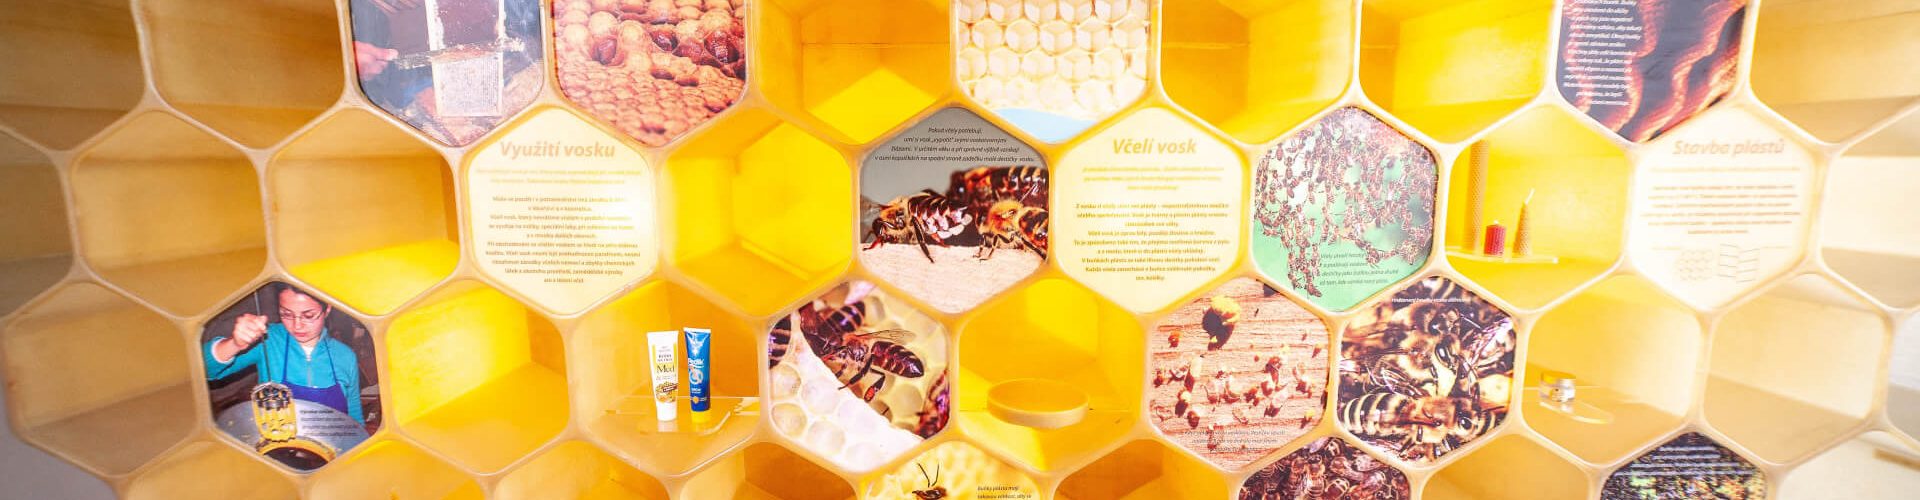 Interaktivní expozice ve Včelím světě Hulice